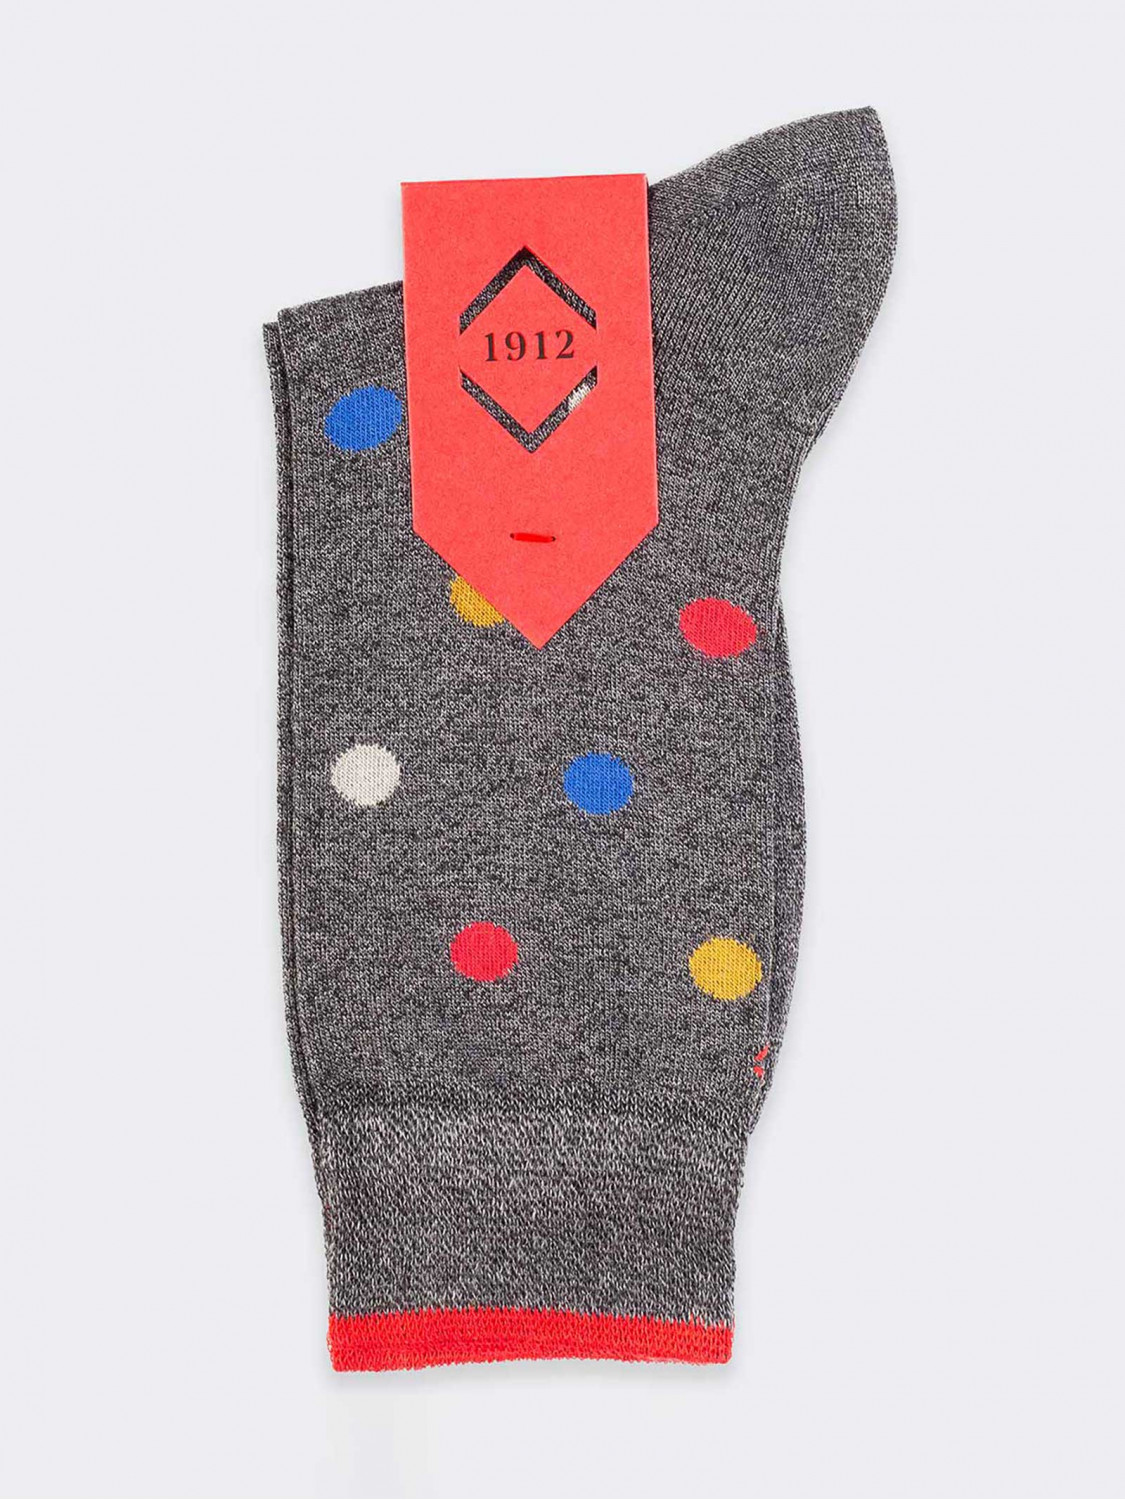 Multicolor confetti pattern Men's Crew socks